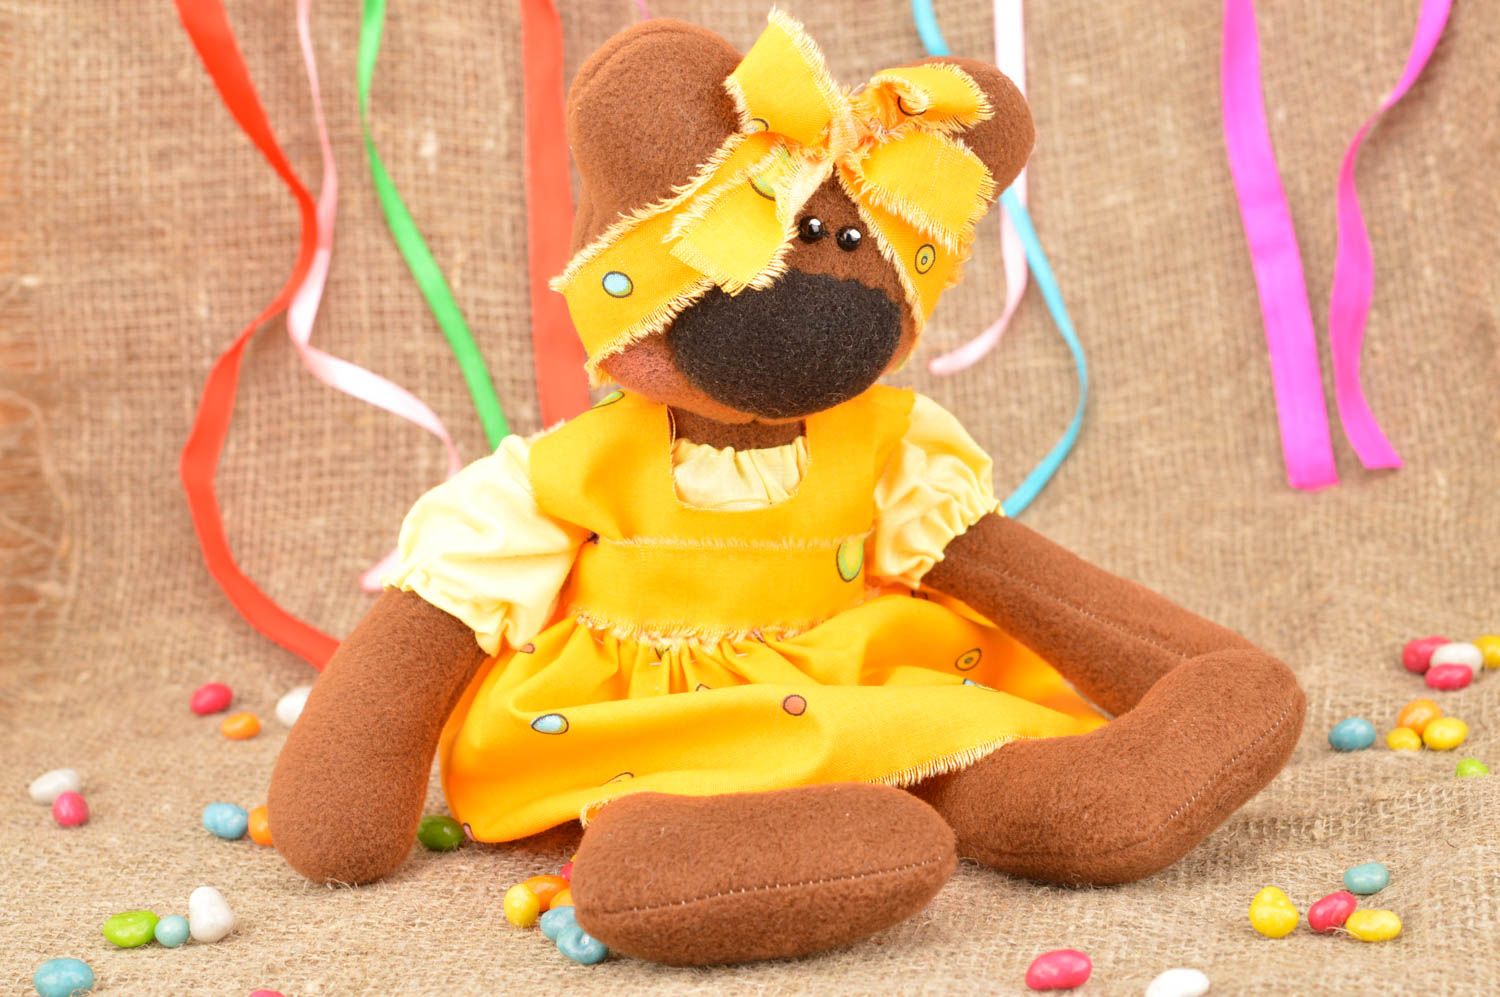 Kuscheltier Bär handgemacht im Kleid weiches Kuscheltier Geschenk für Kind schön foto 1